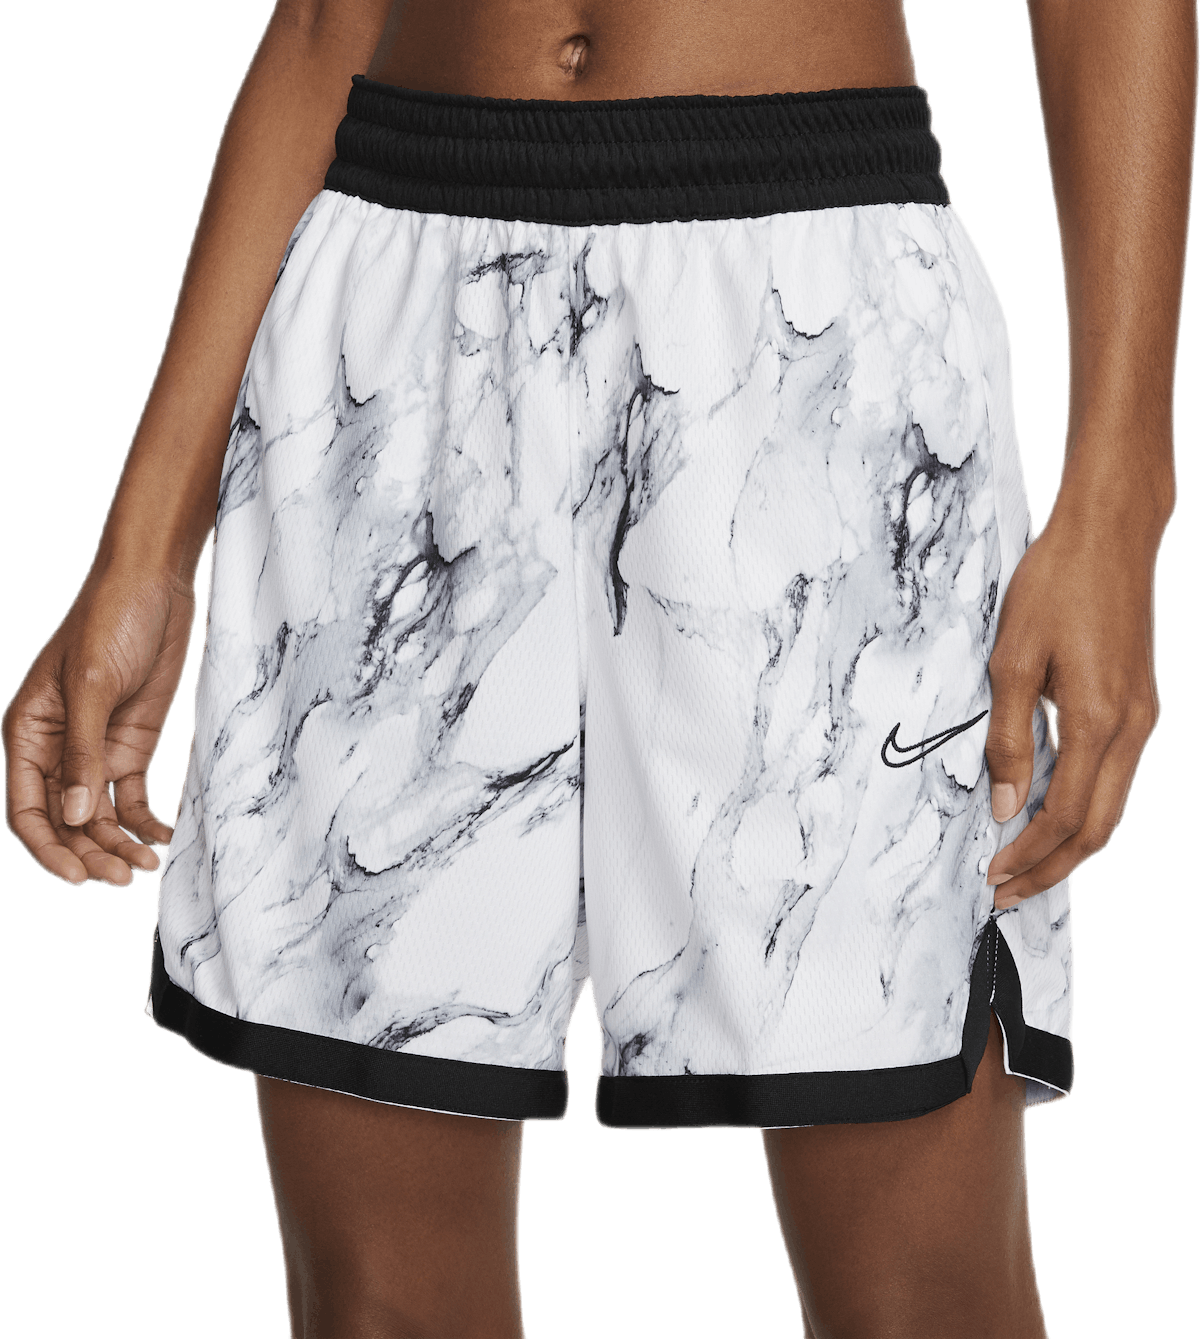 Women's Dri-Fit Shorts